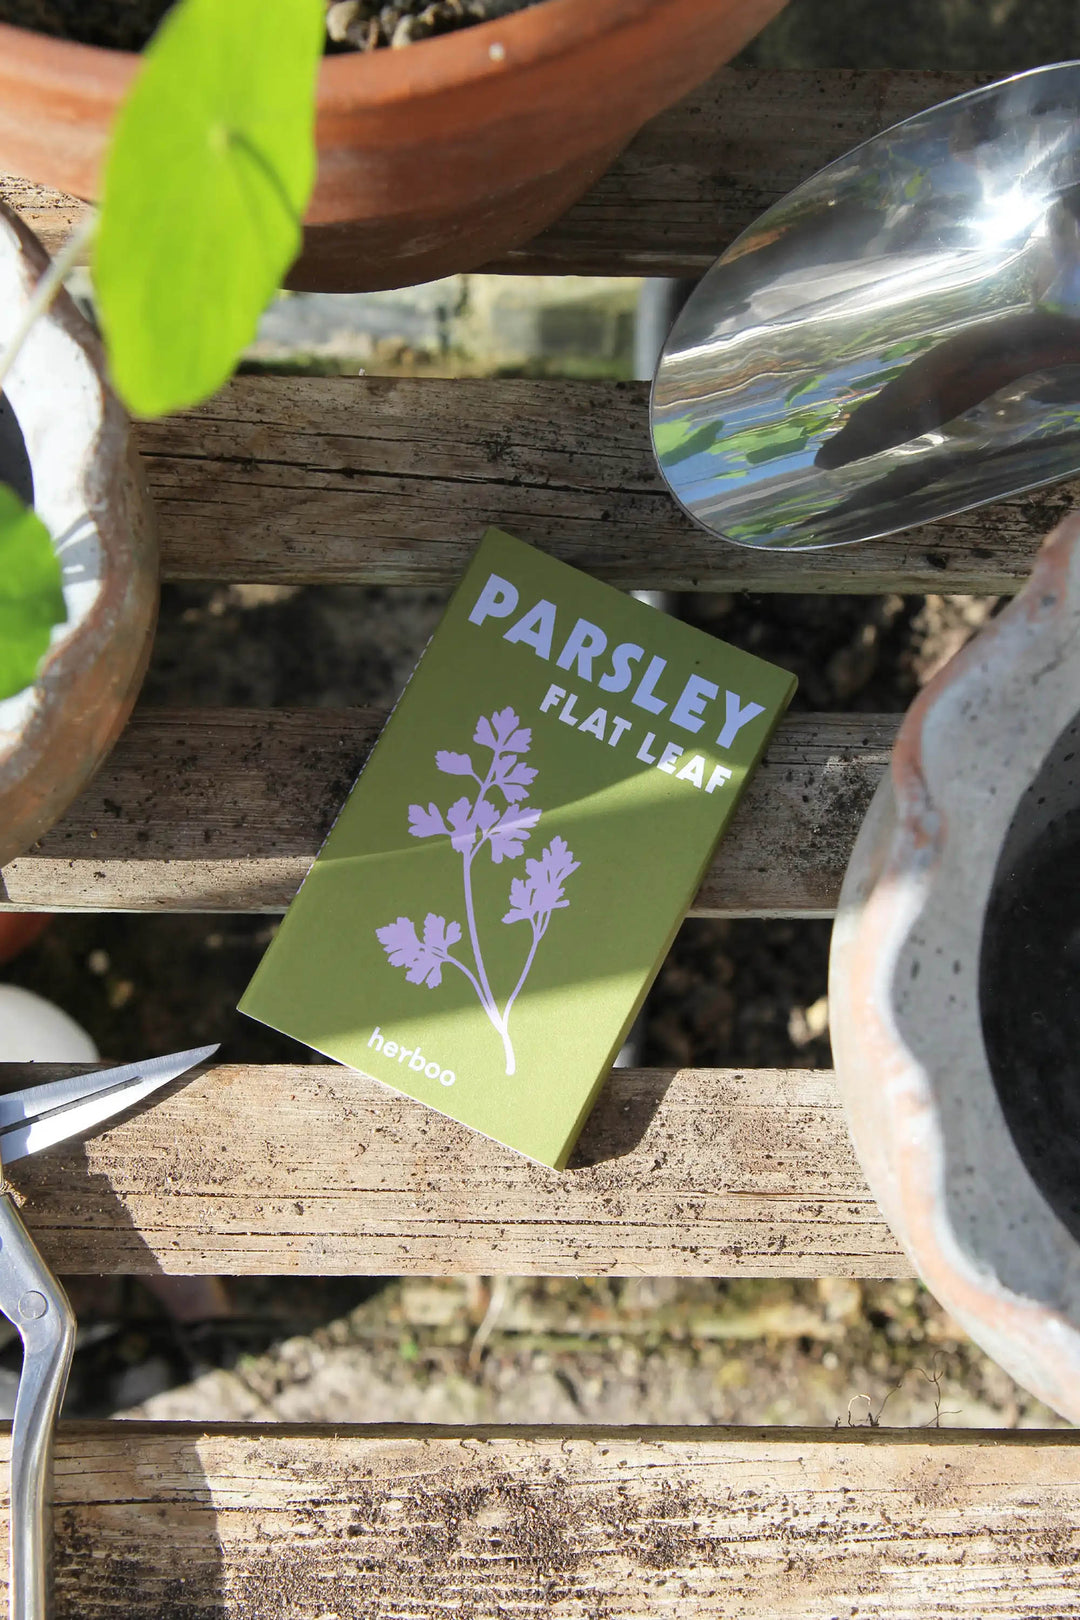 Seeds / Parsley